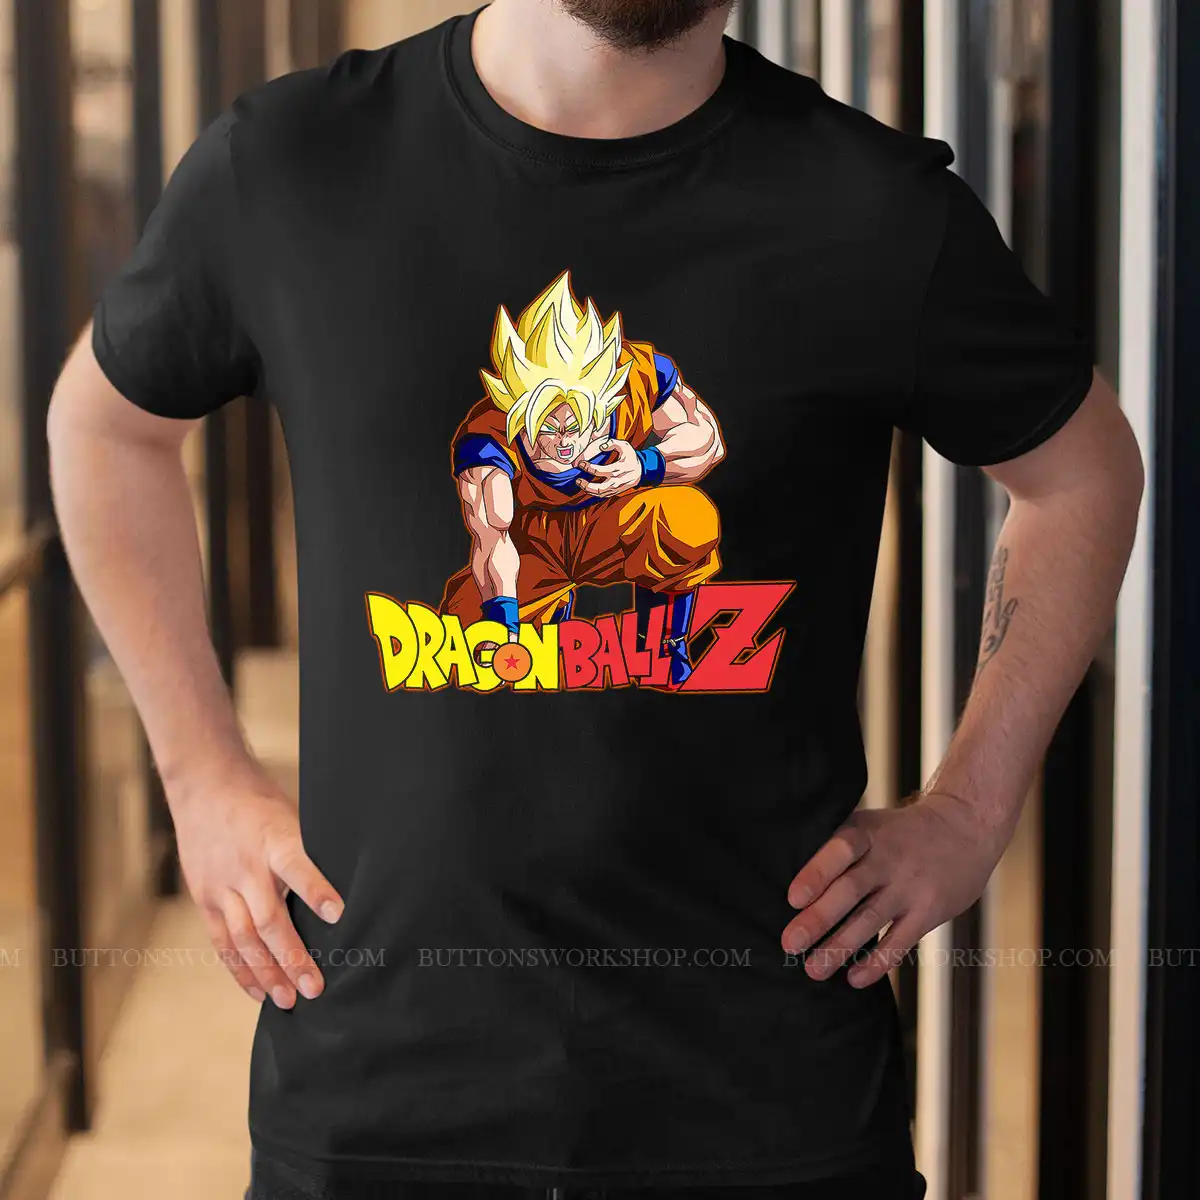 Dragon Ball Z Shirt Unisex Tshirt